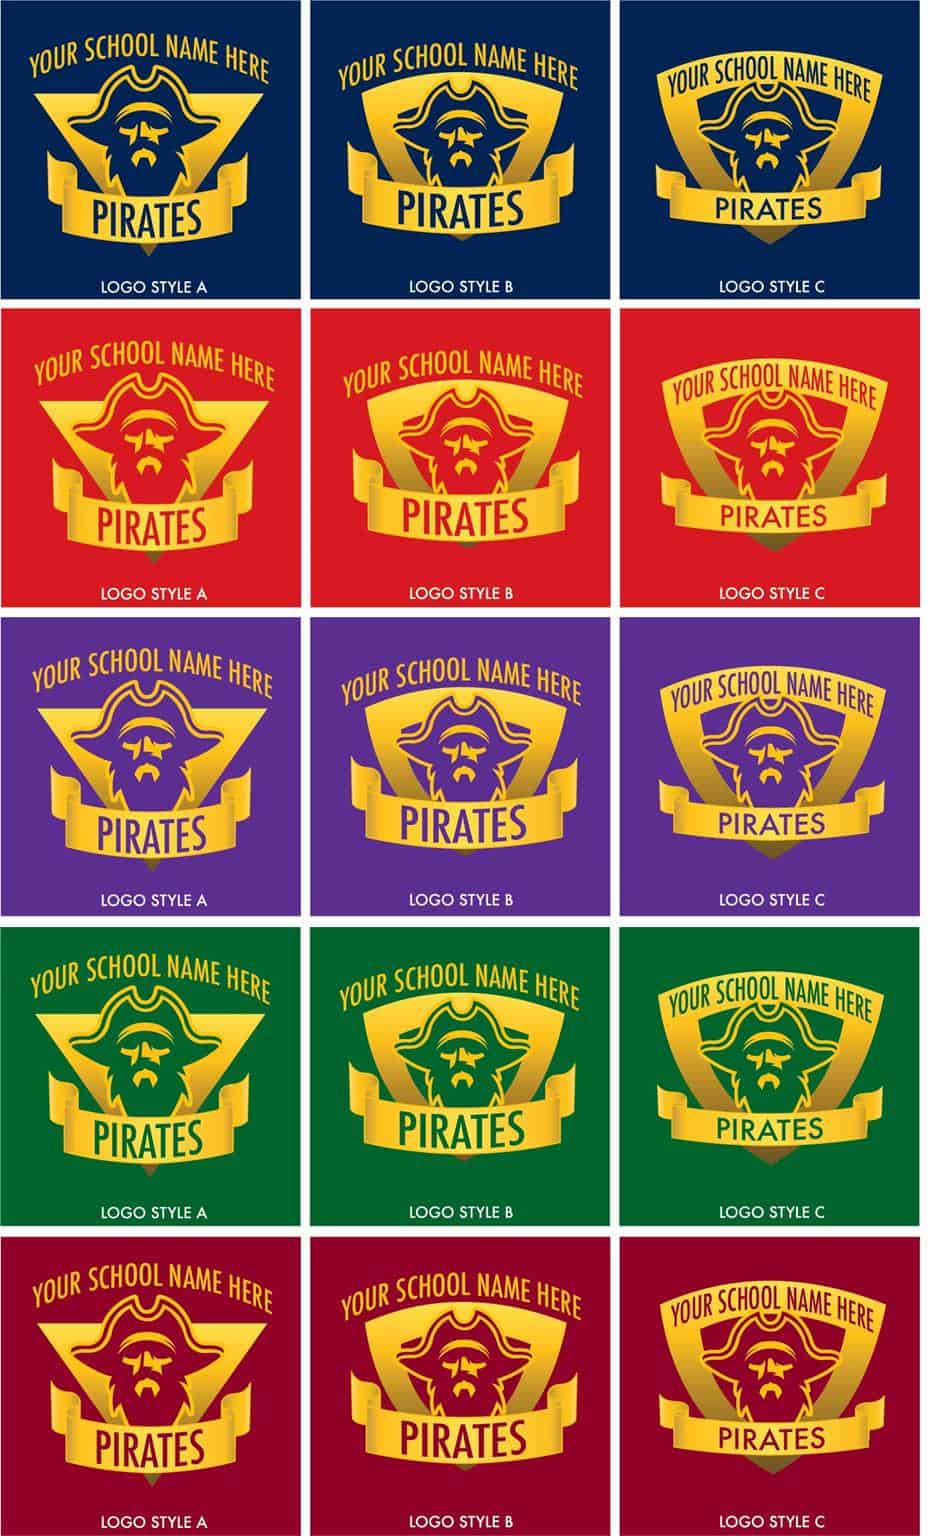 Pirate School Mascot Logo